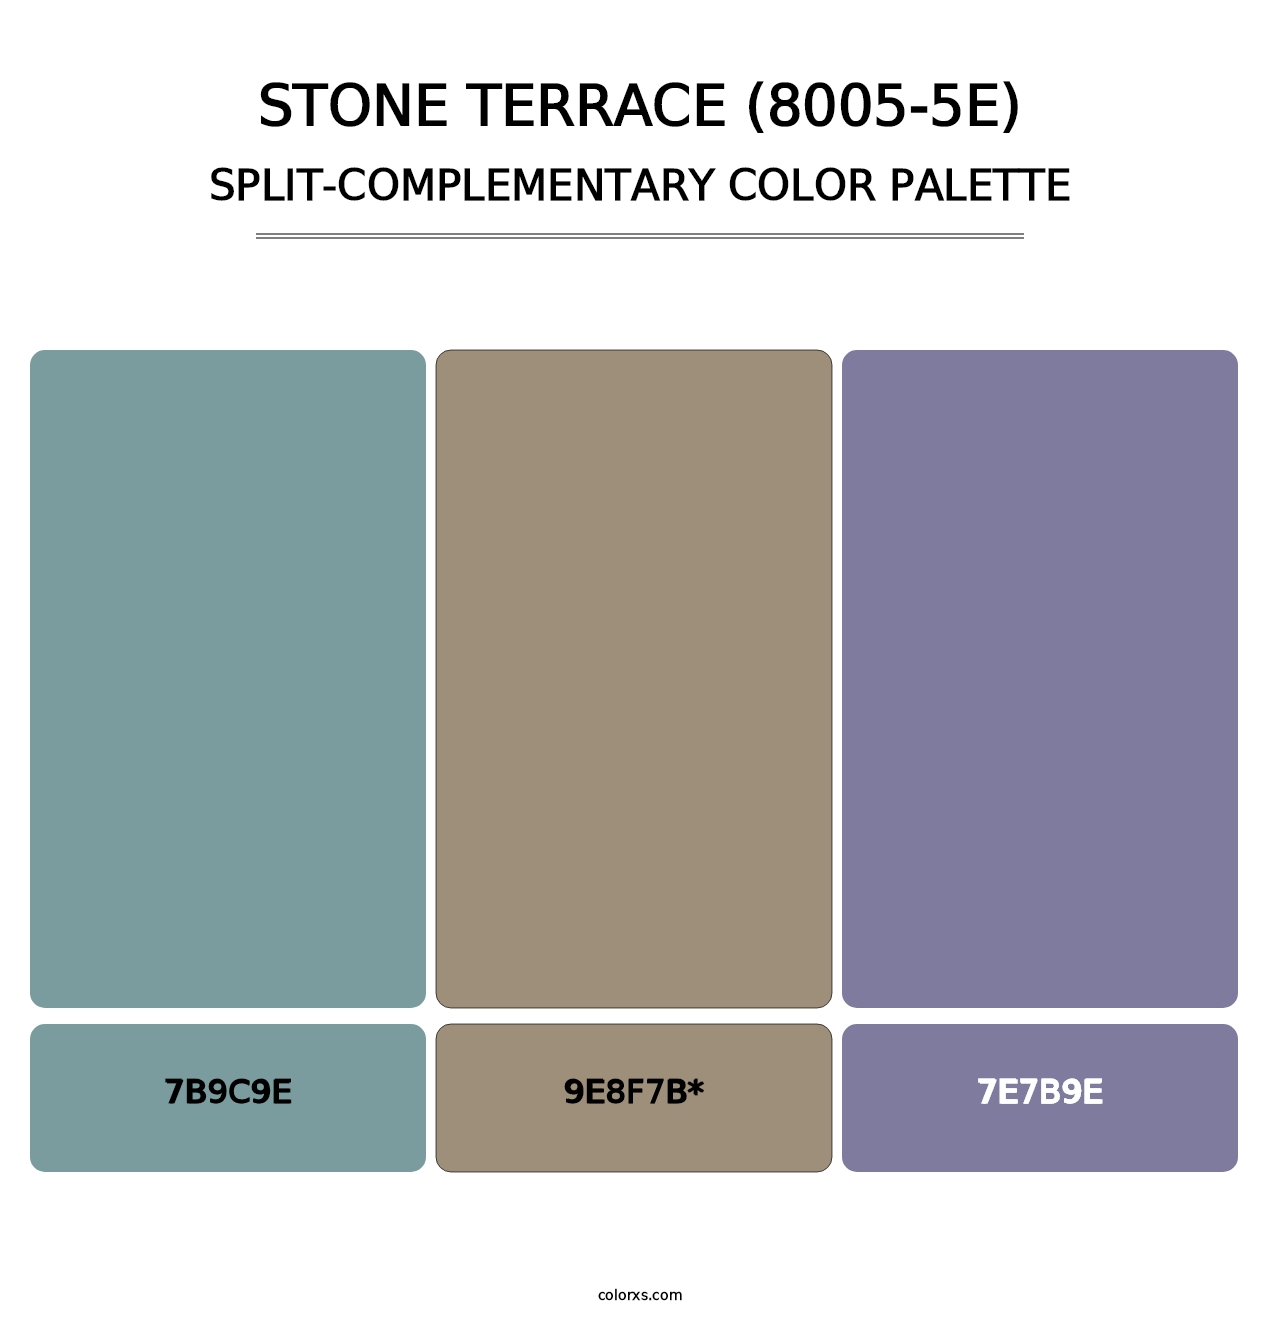 Stone Terrace (8005-5E) - Split-Complementary Color Palette